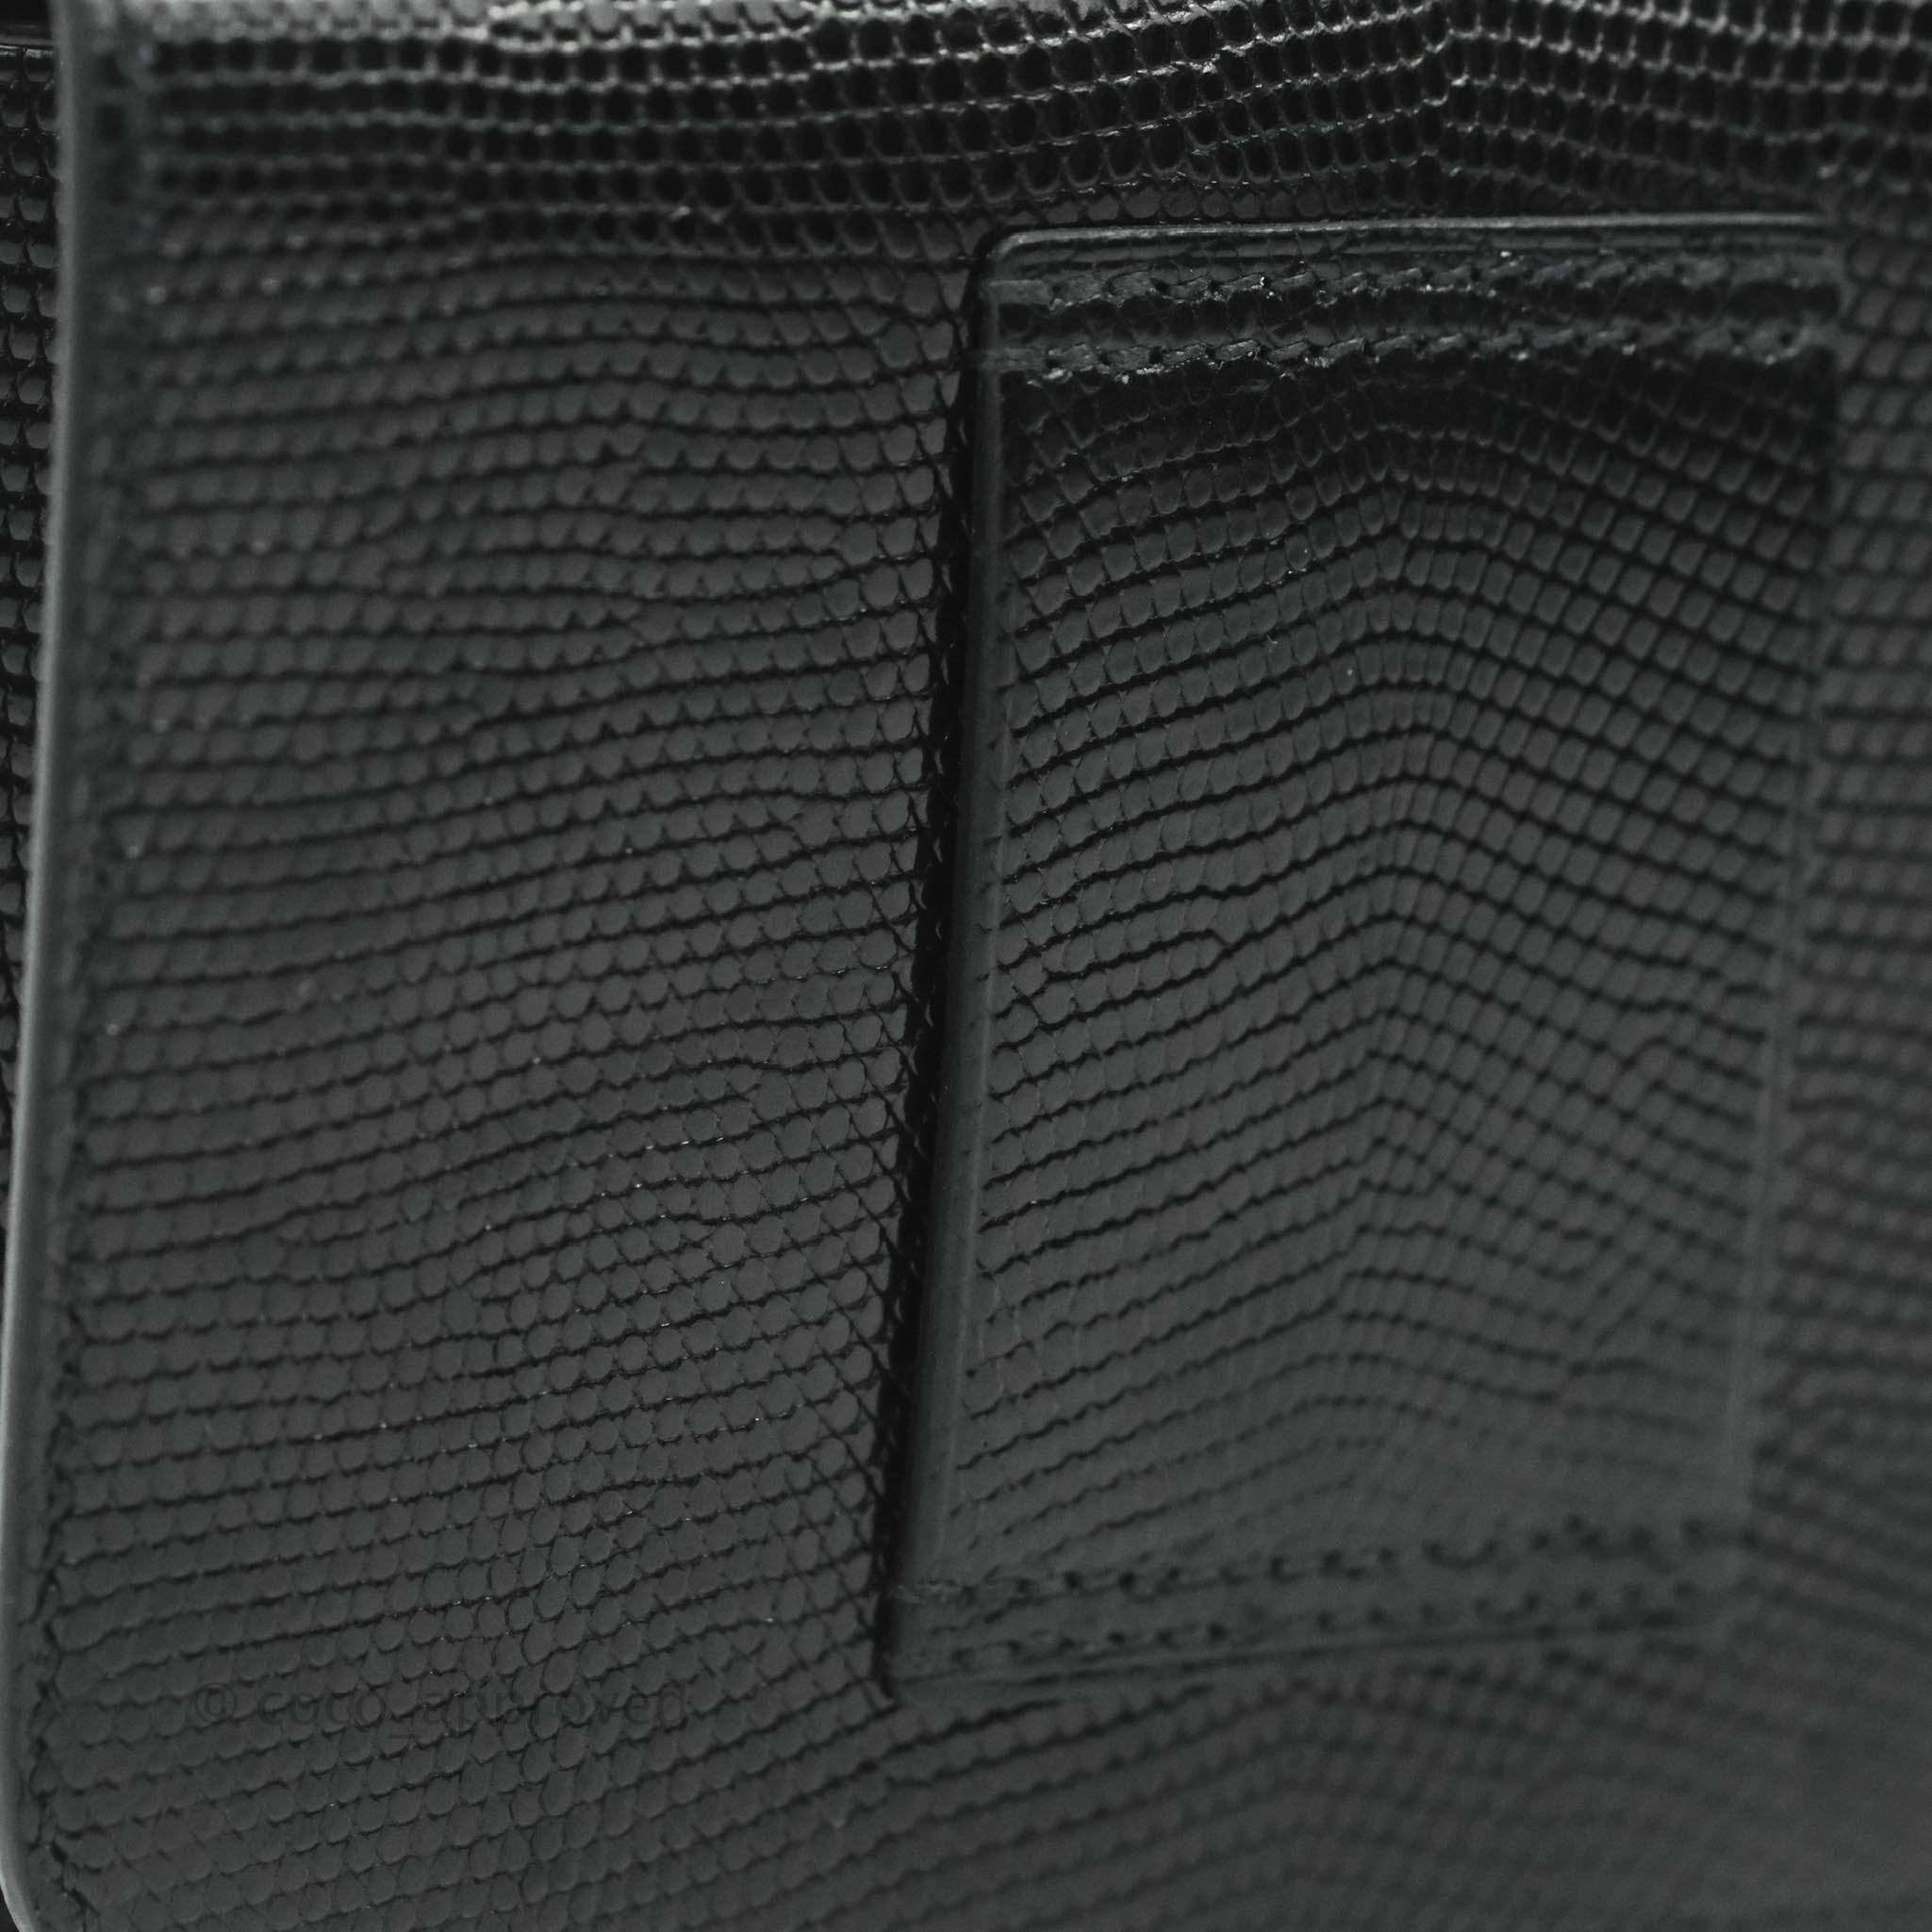 Black Constance Slim wallet with rose gold hardware - HERMÈS